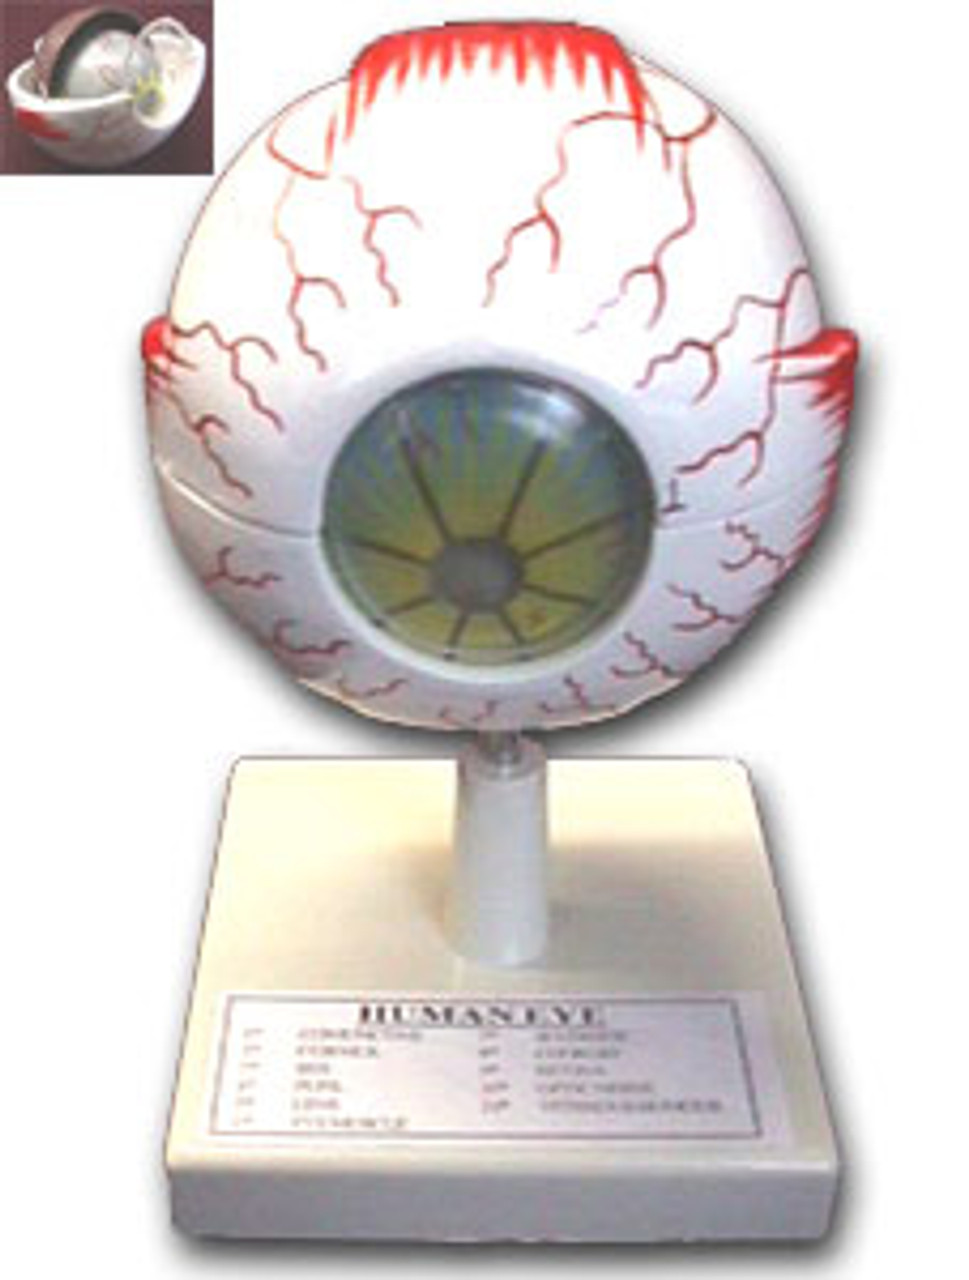 Model of the Eye